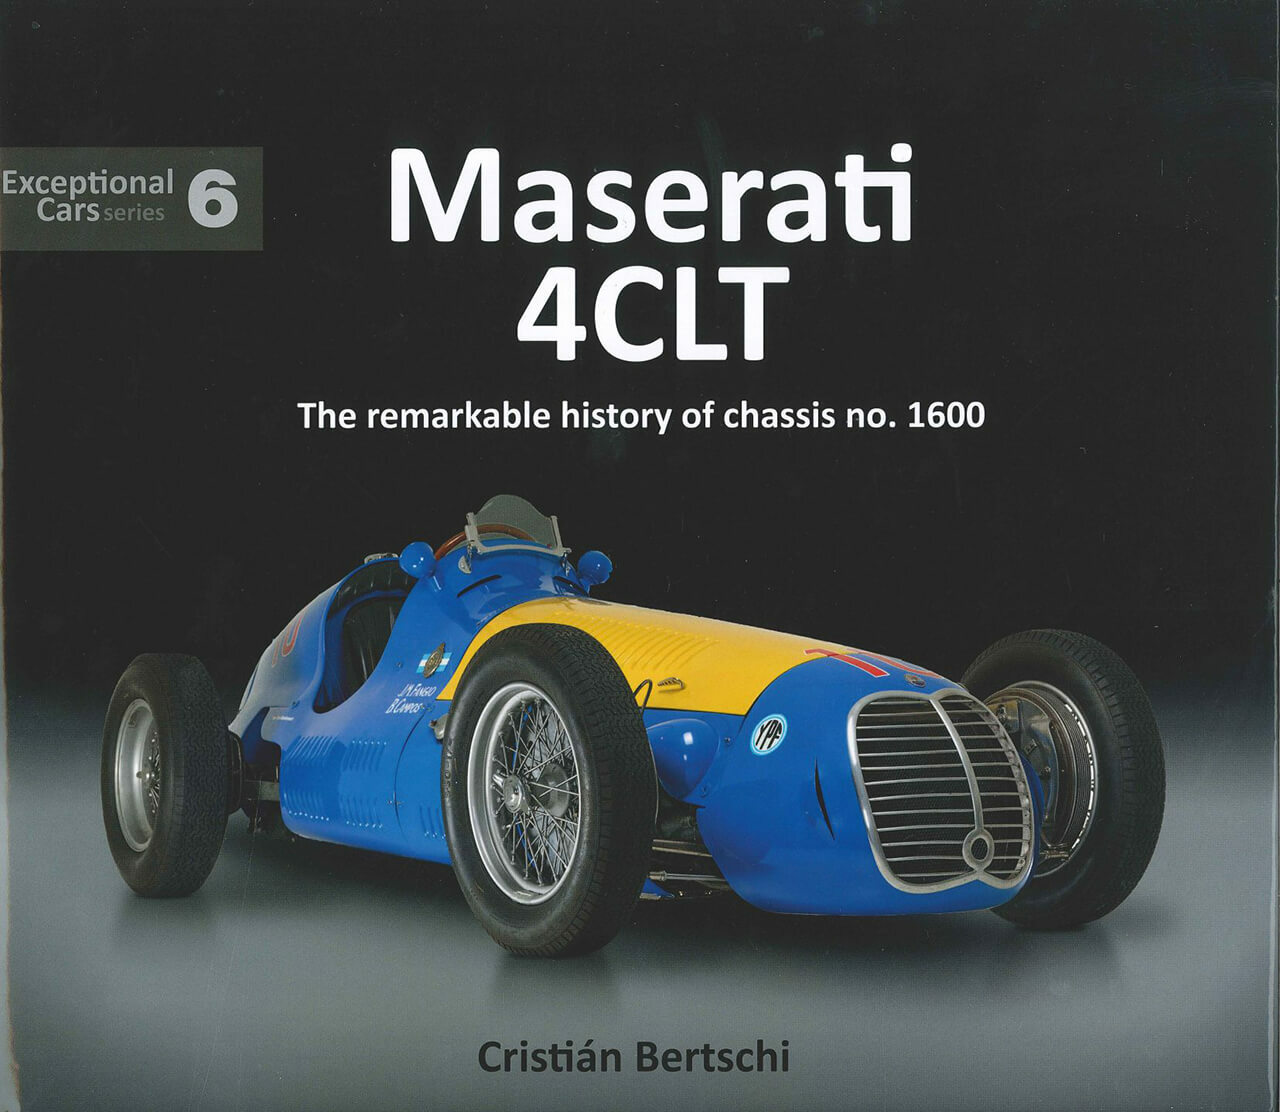 F1で輝かしい戦績を残した「マセラティ4CLT」の中でも特に「サンレモ」にスポットを当てたマニアックな資料集【新書紹介】